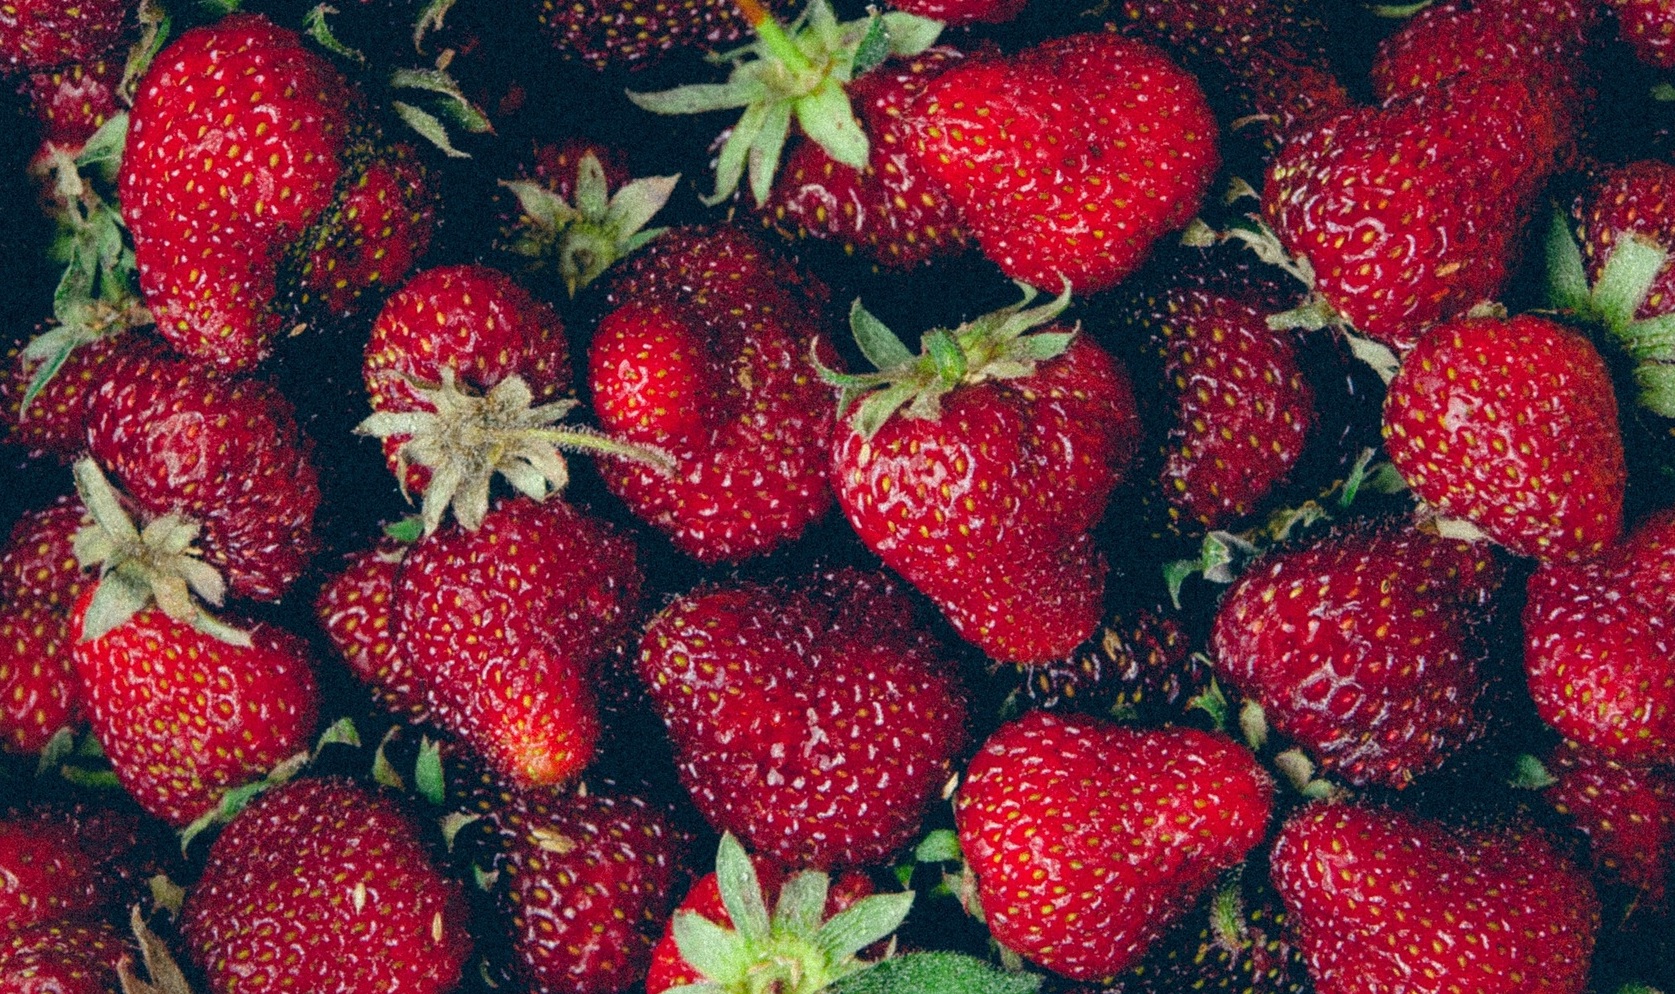 How to Store Strawberries Main